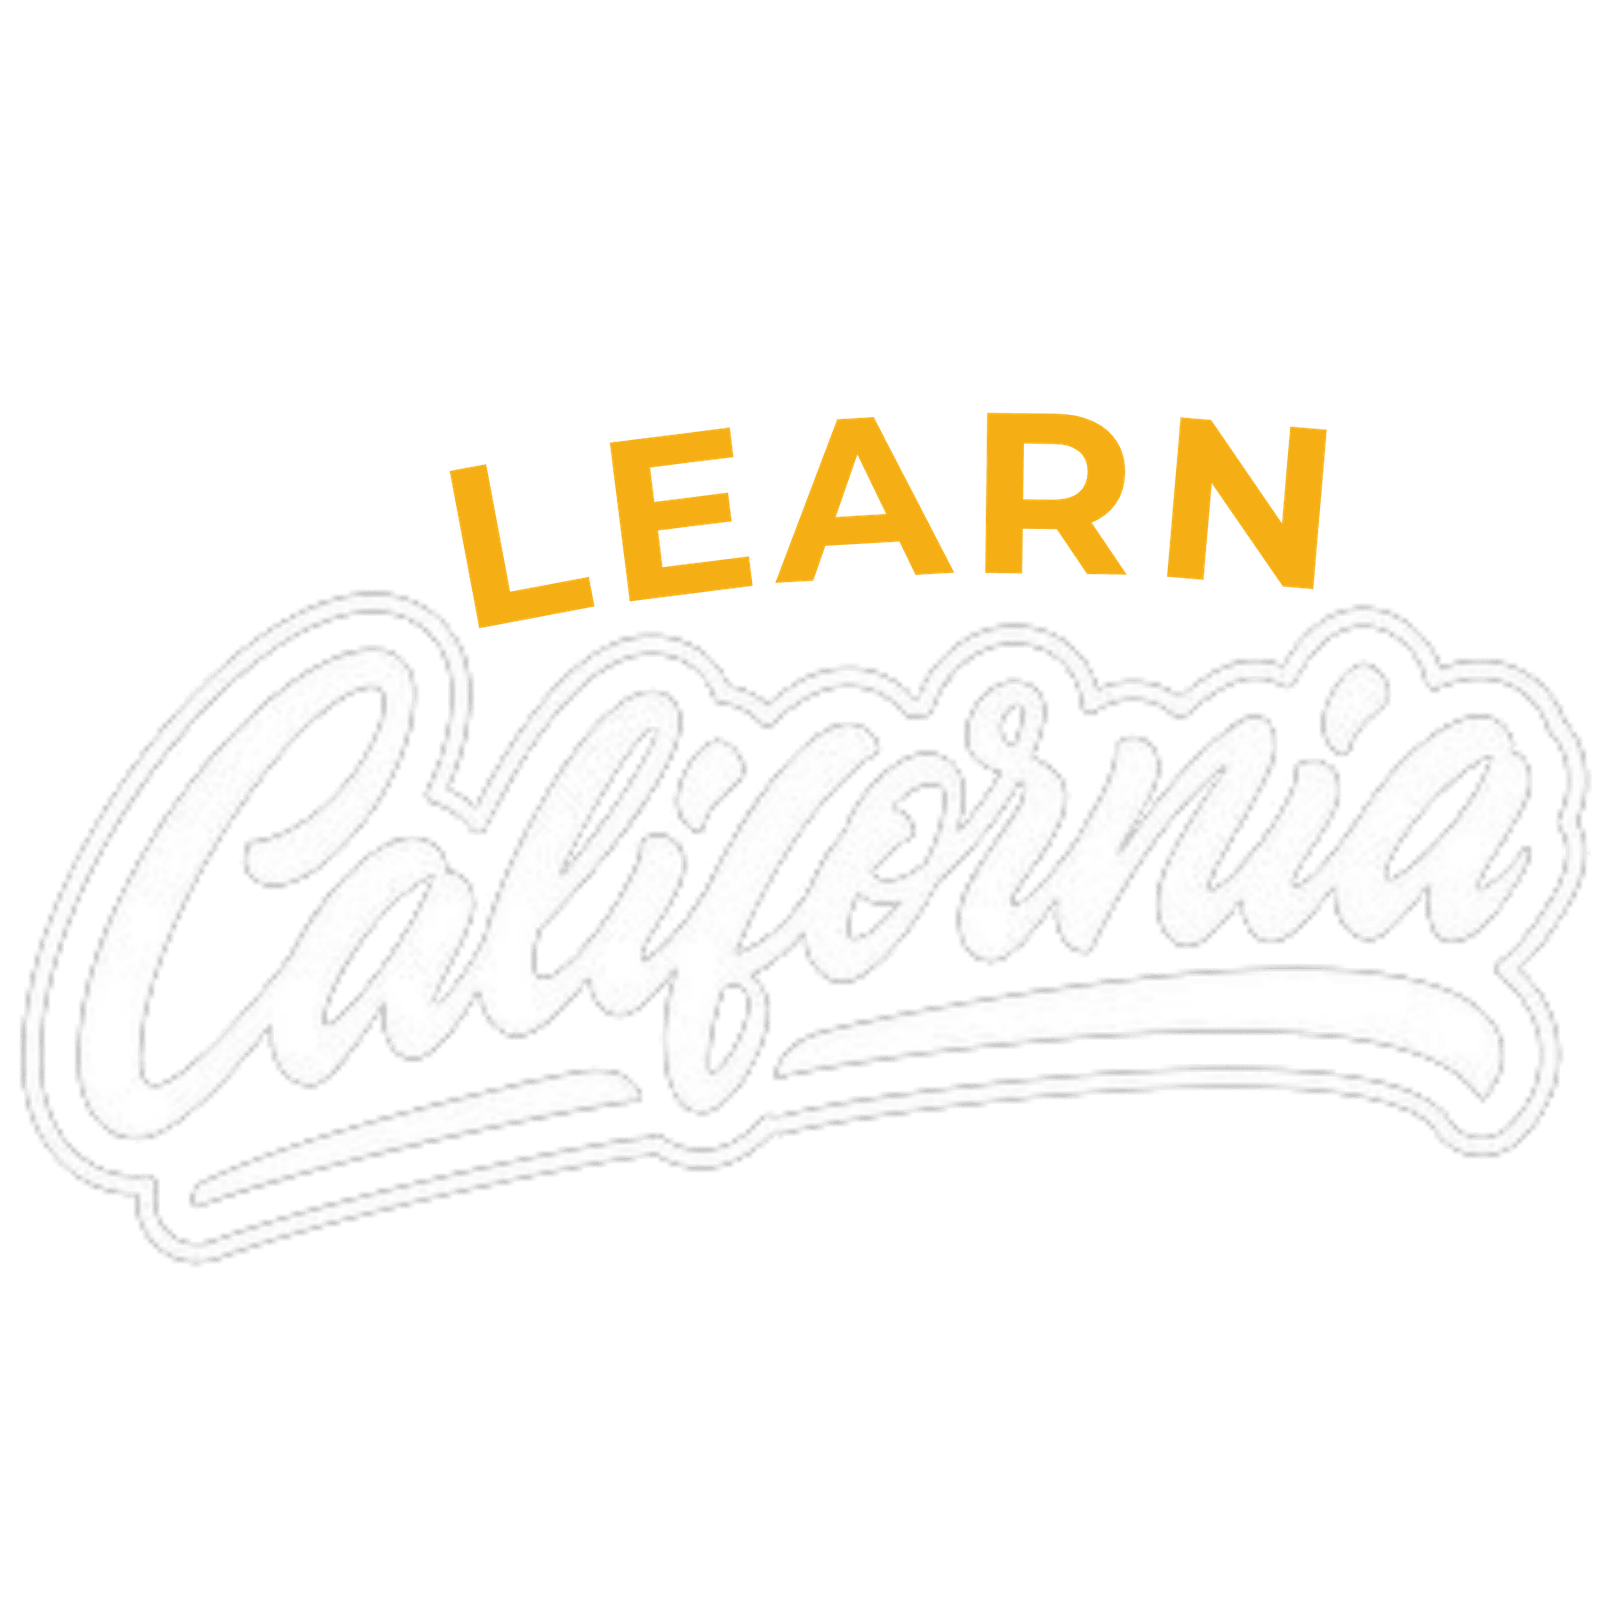 Learn California